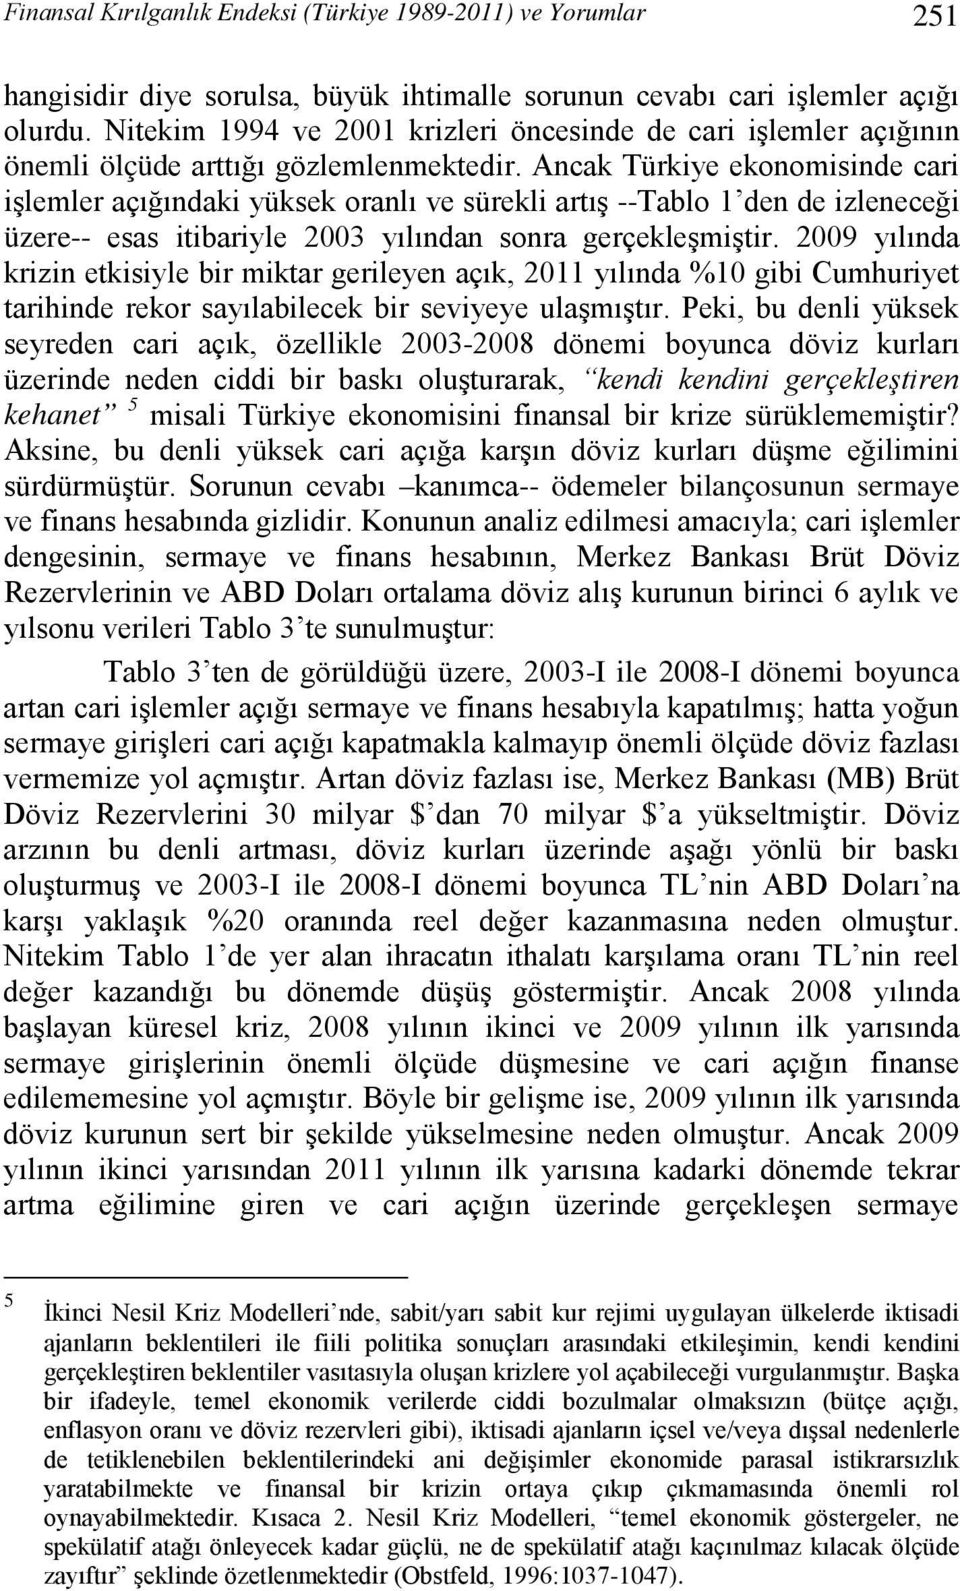 Ancak Türkiye ekonomisinde cari işlemler açığındaki yüksek oranlı ve sürekli artış --Tablo 1 den de izleneceği üzere-- esas itibariyle 2003 yılından sonra gerçekleşmiştir.